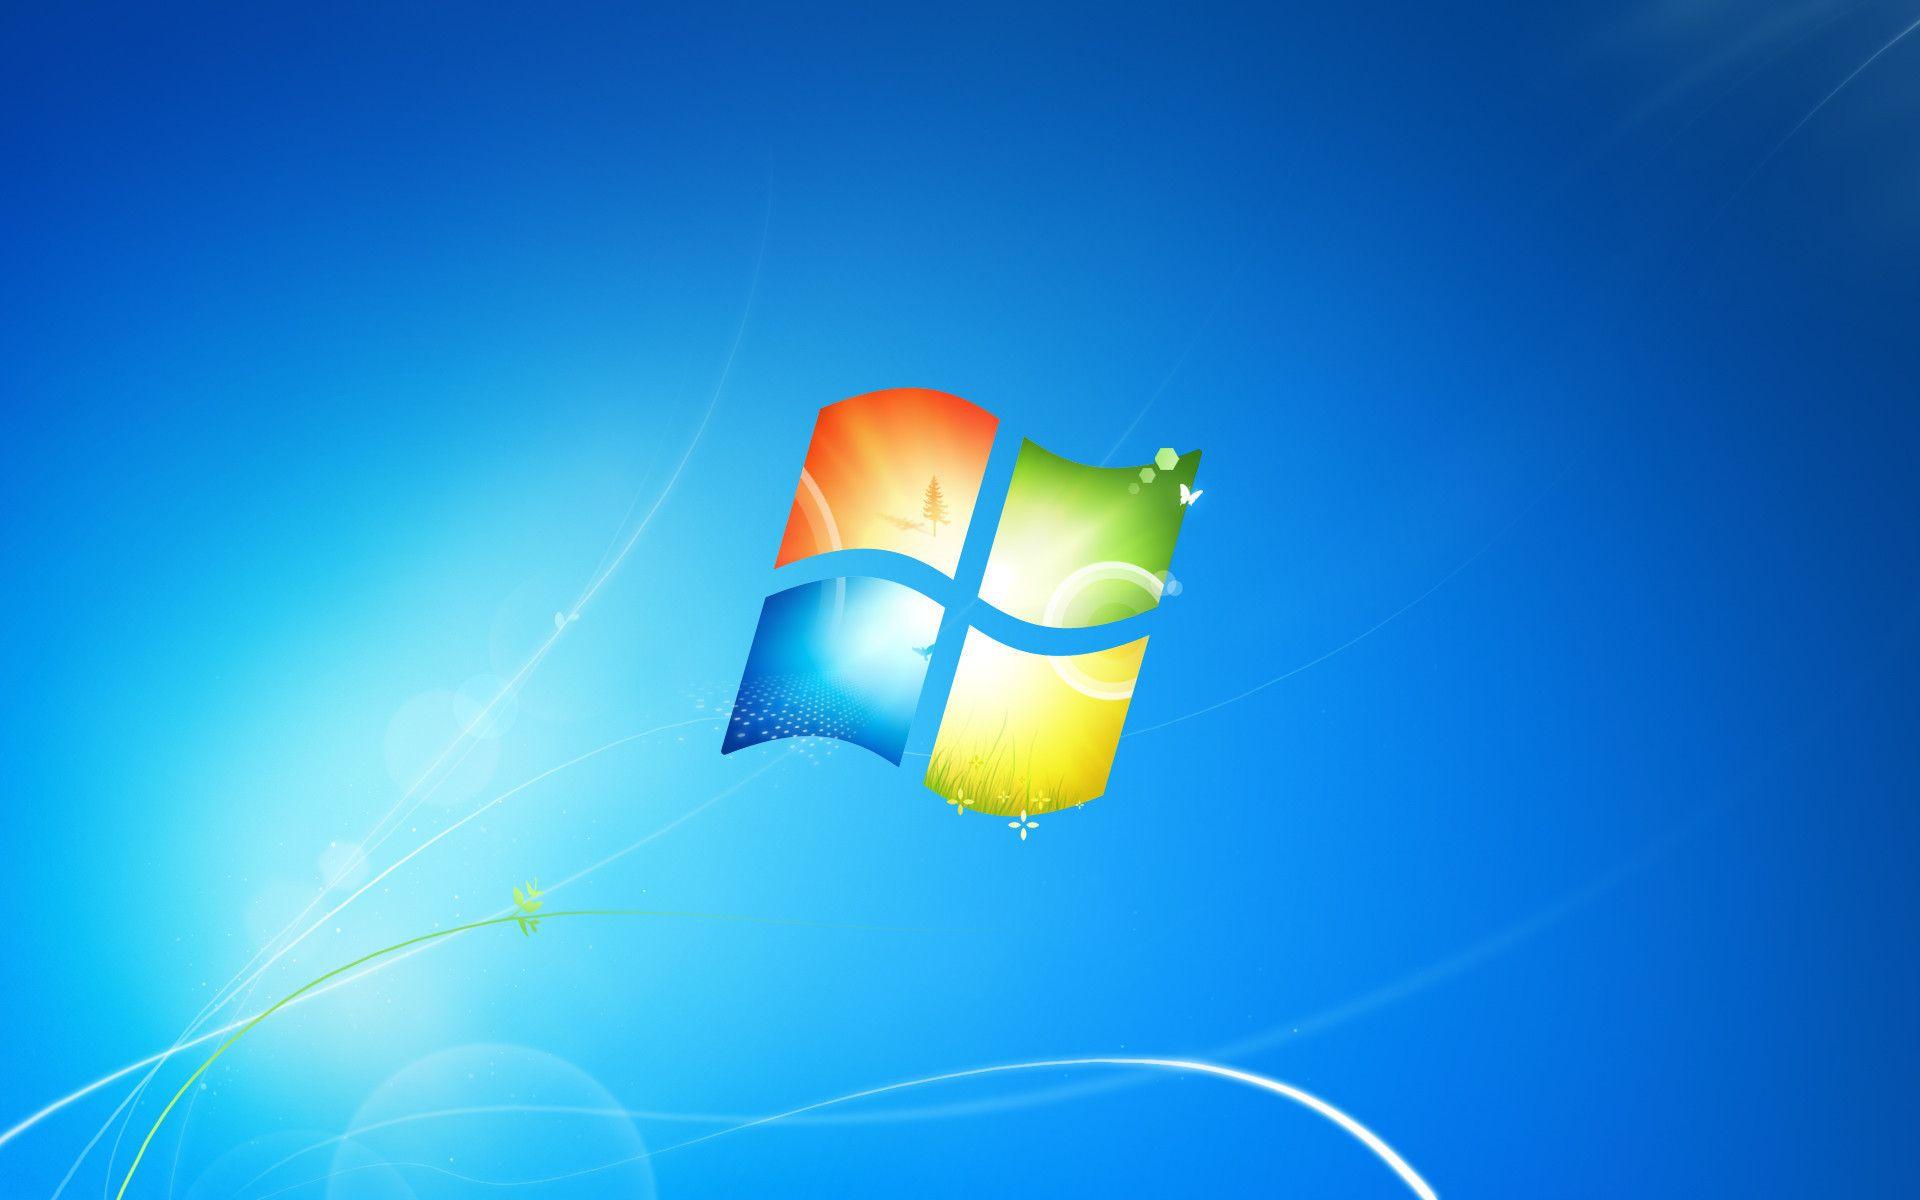 Microsoft: Windows 7 does not meet the demands of modern technology